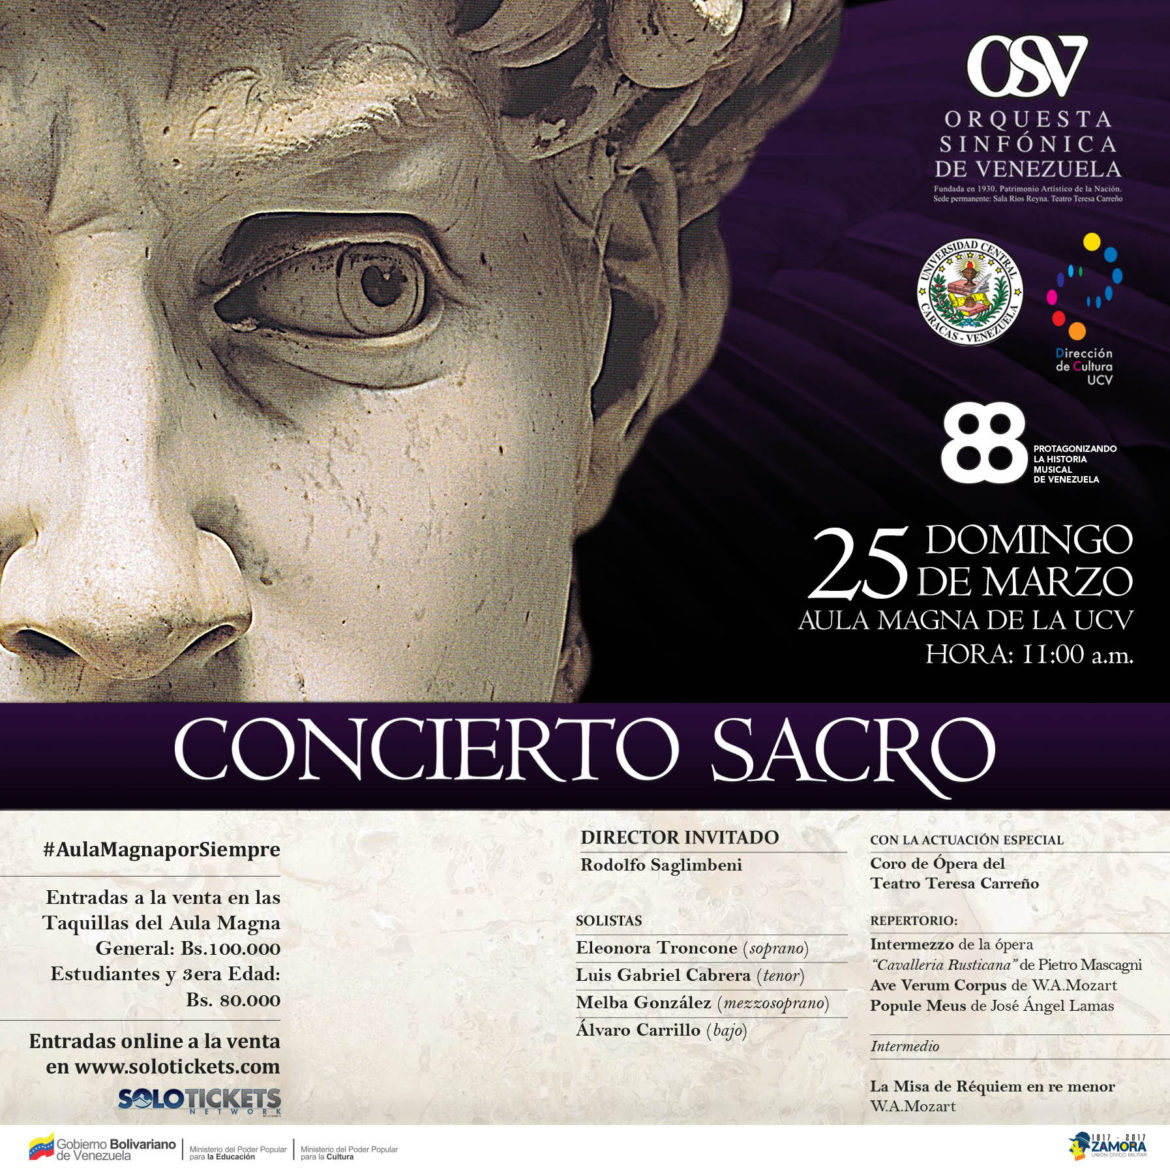 Sinfónica de Venezuela celebra 88 años con Concierto Sacro